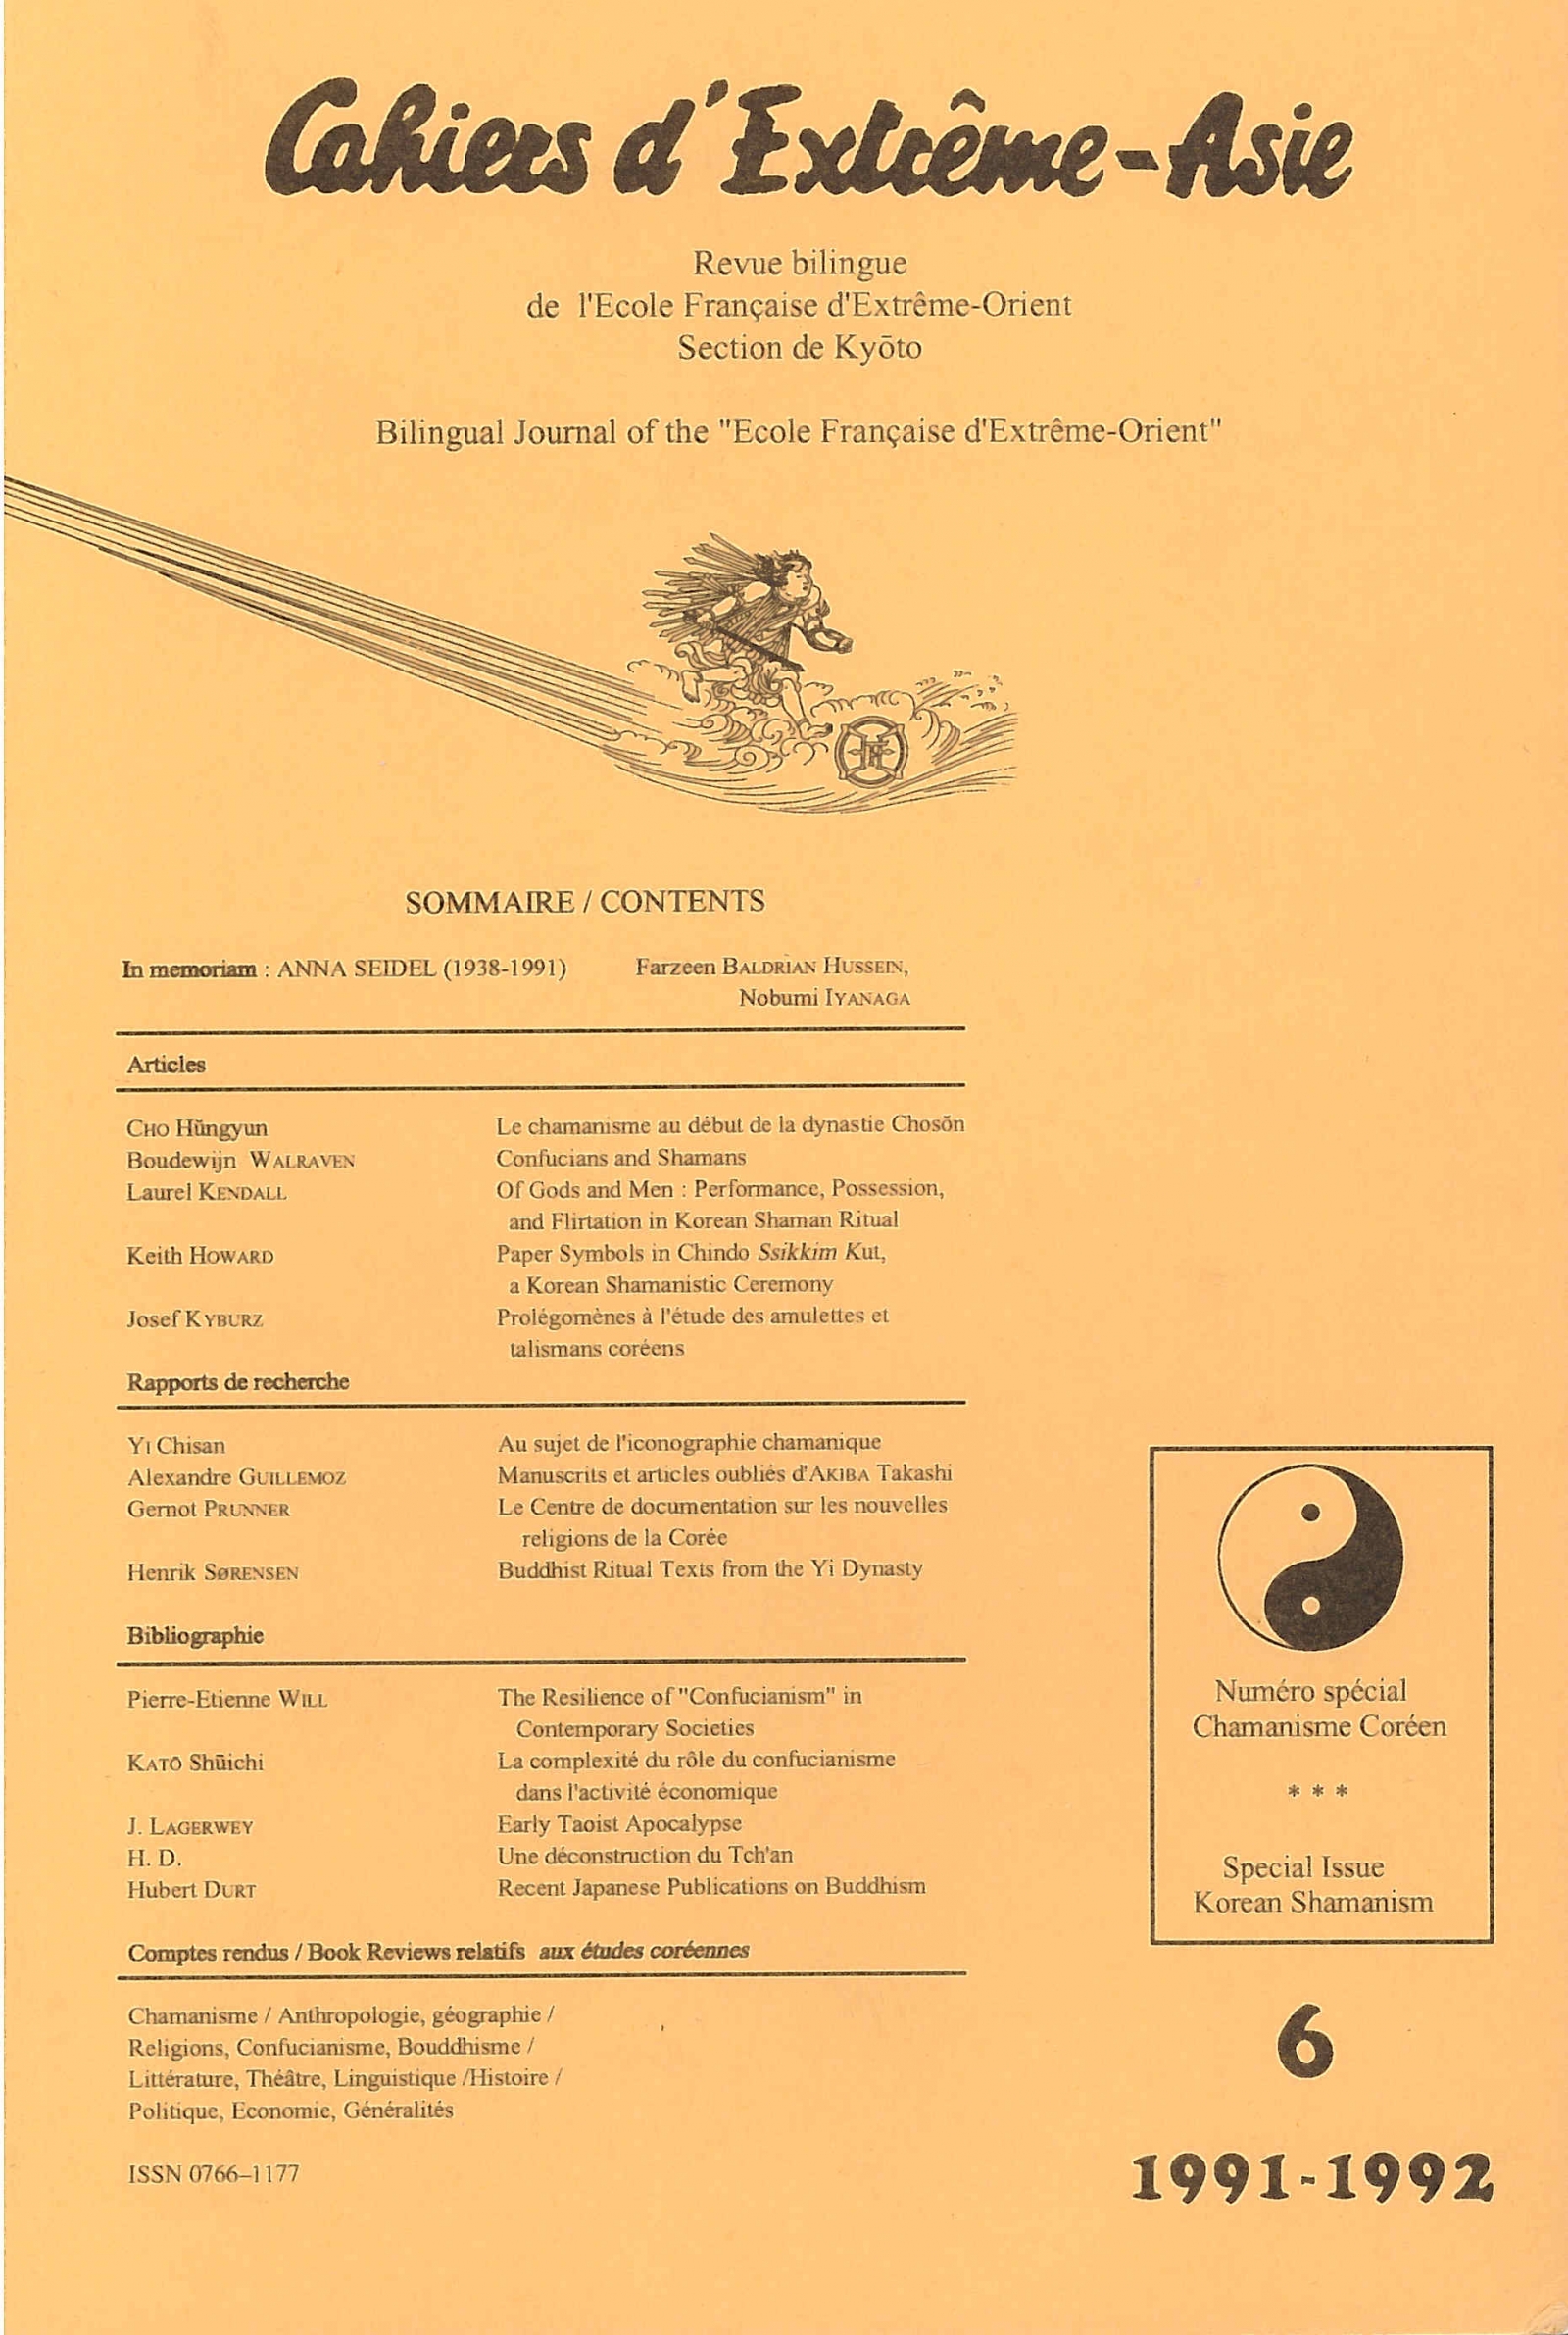 Cahiers d'Extrême-Asie 6 (1991-1992)